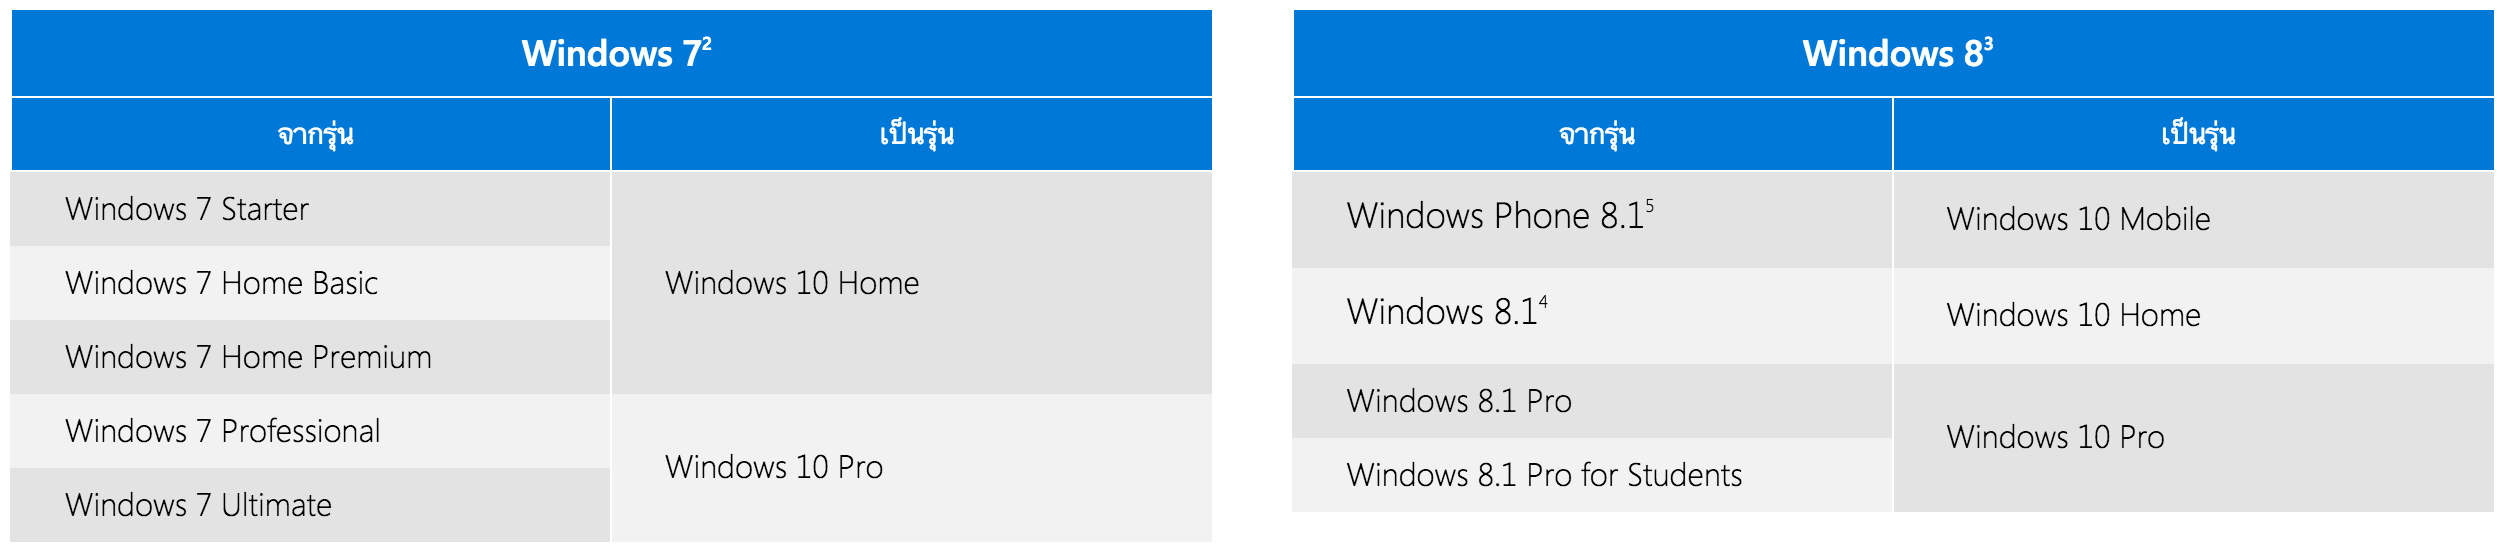 3923 โปรอัปเกรดจาก Windows 7,8.1 เป็น Windows 10   